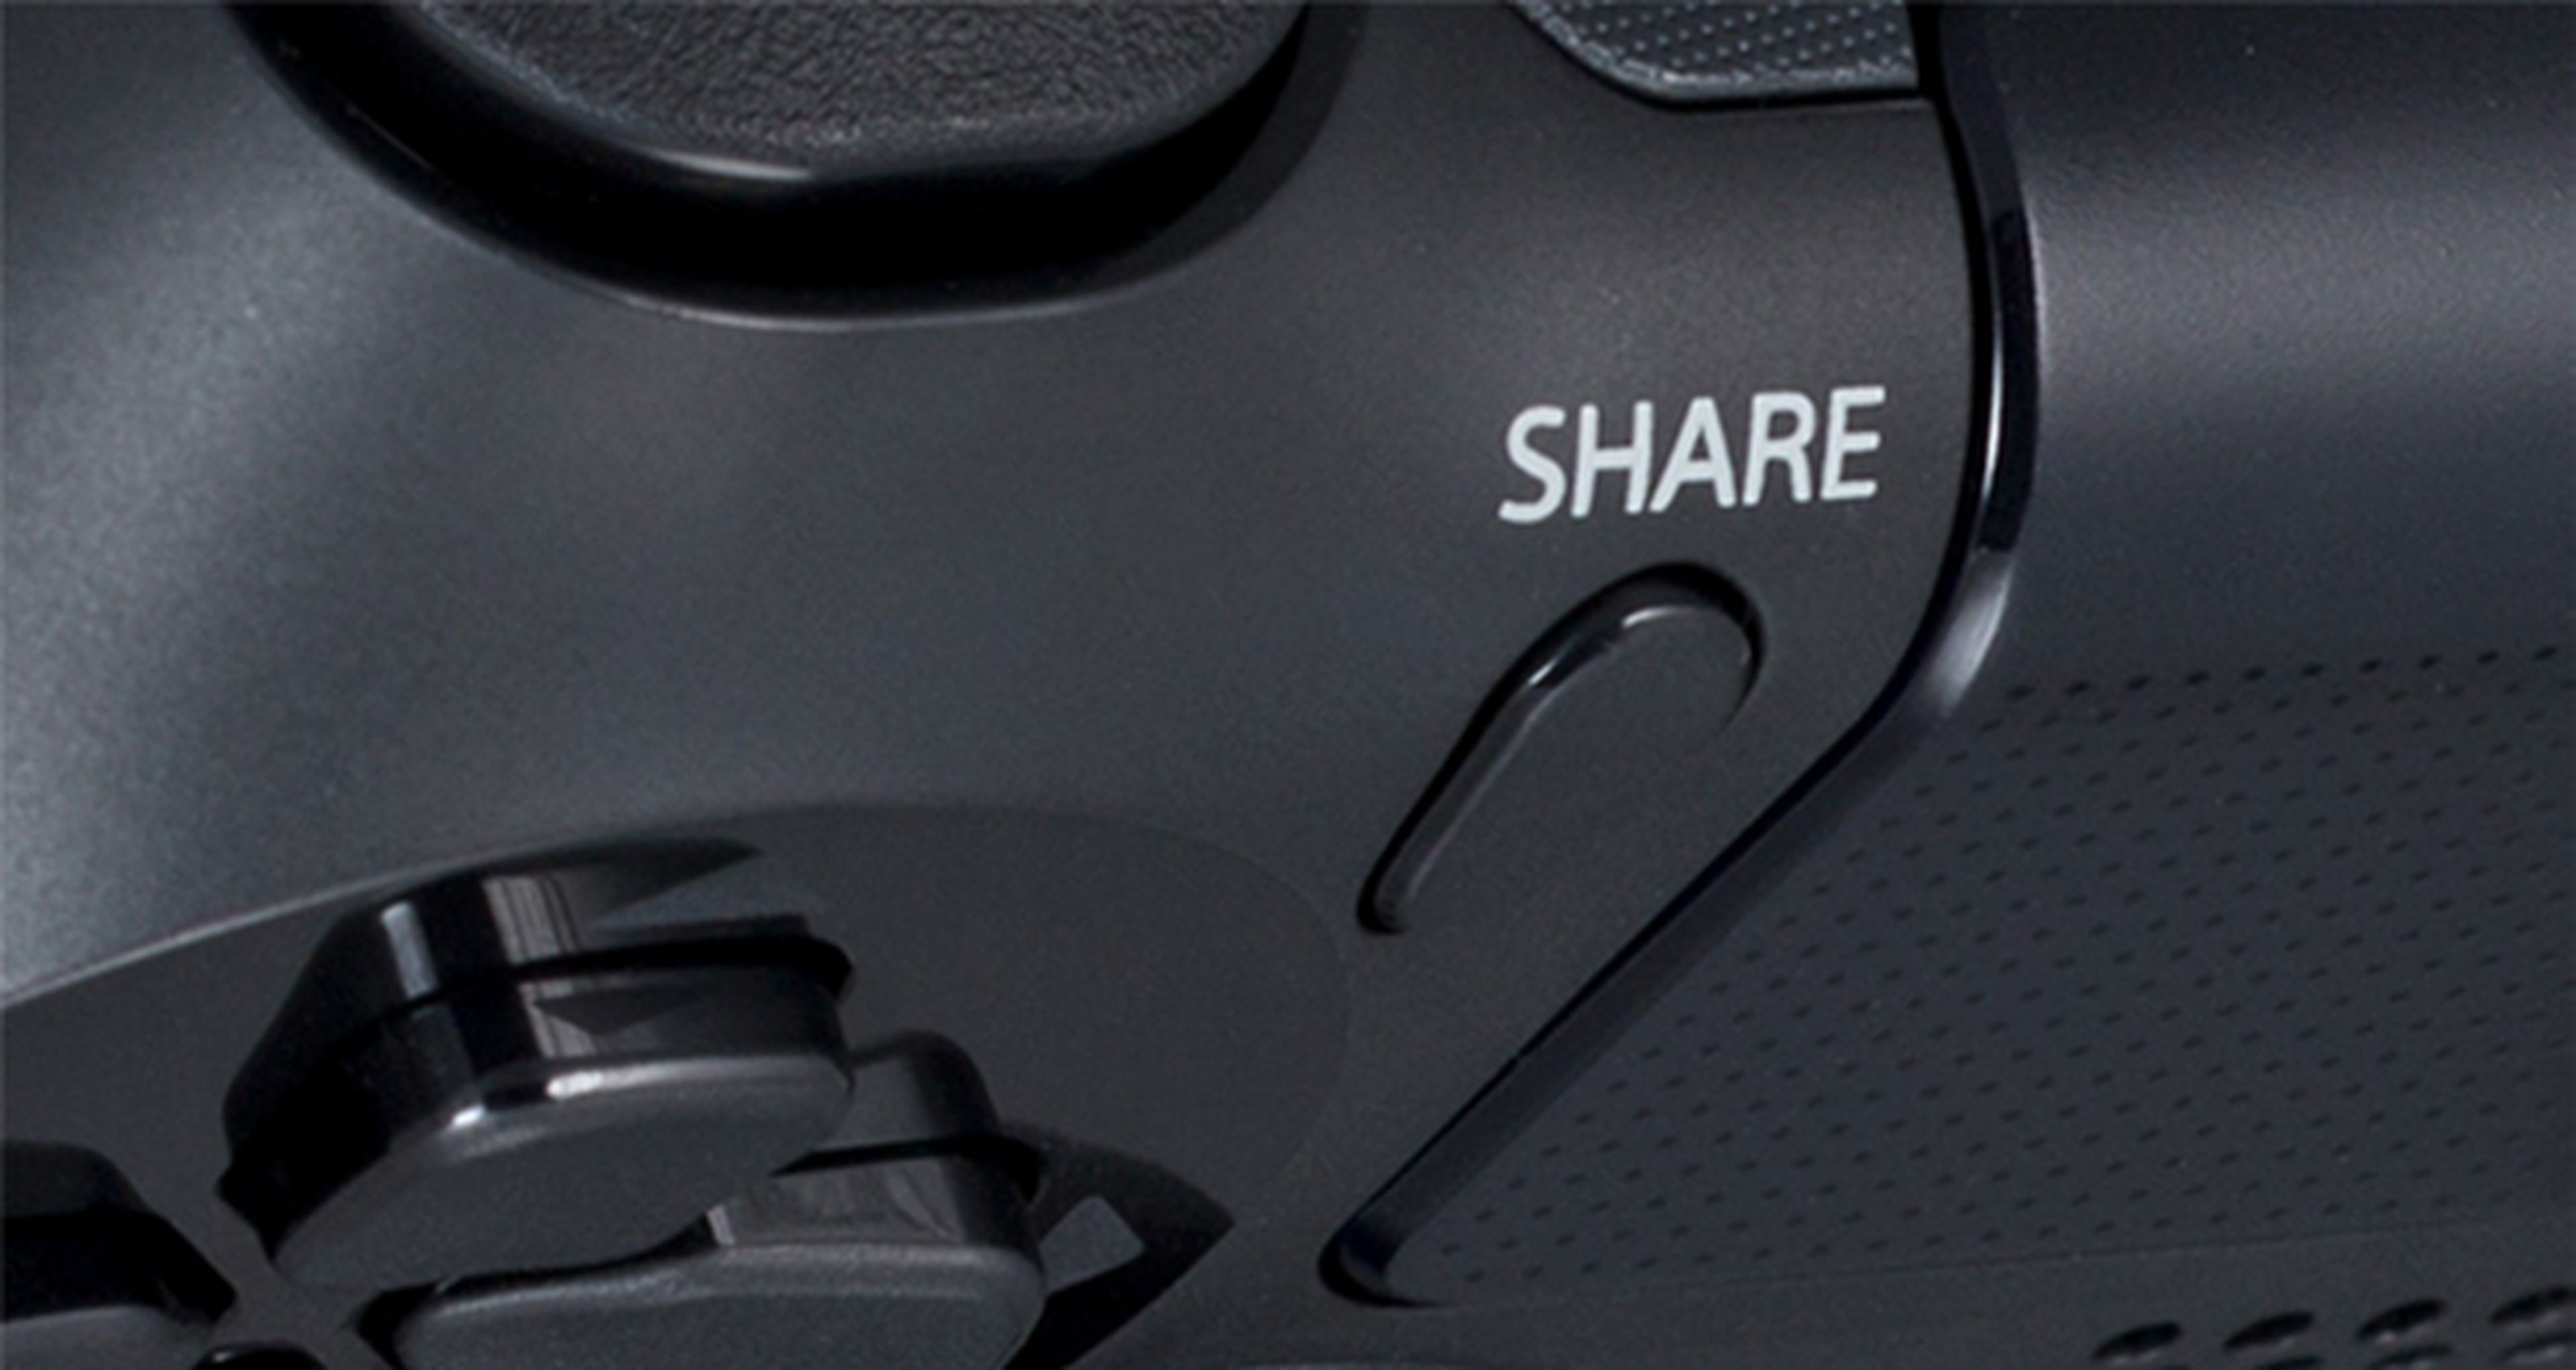 Las sesiones de Share Play en PS4 durarán un máximo de una hora